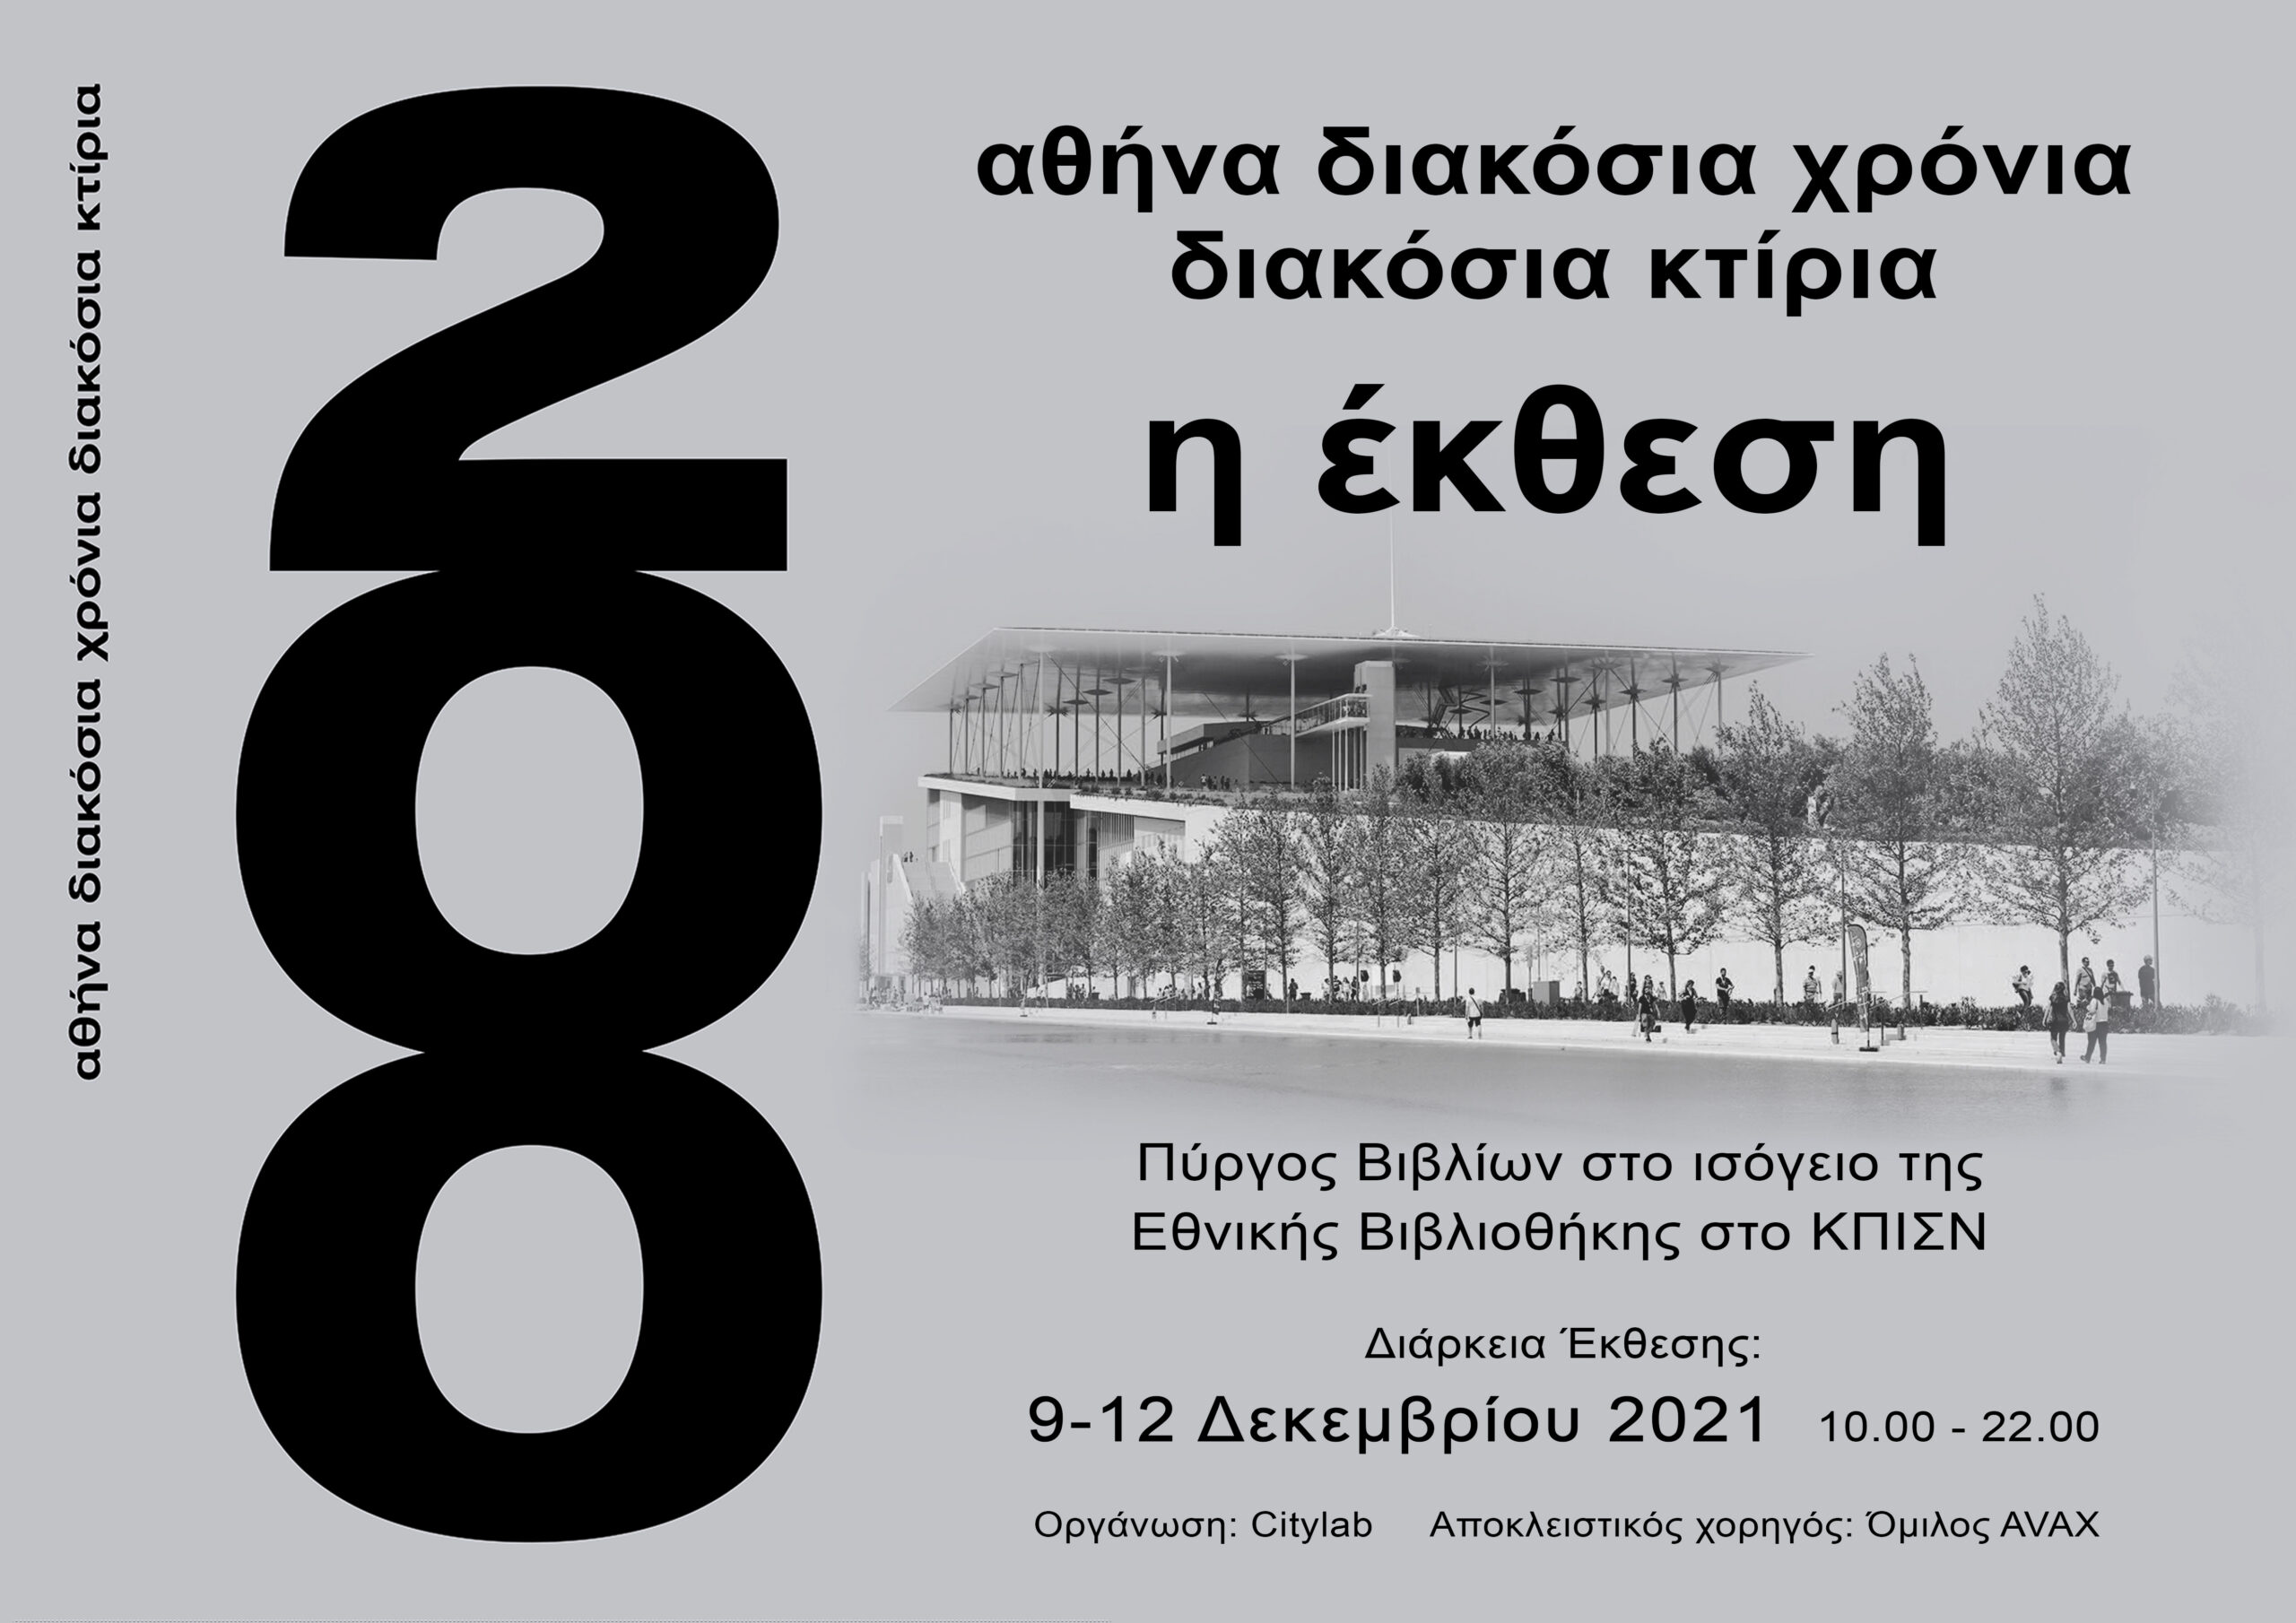  Αθήνα 200 χρόνια 200 κτίρια – η Έκθεση